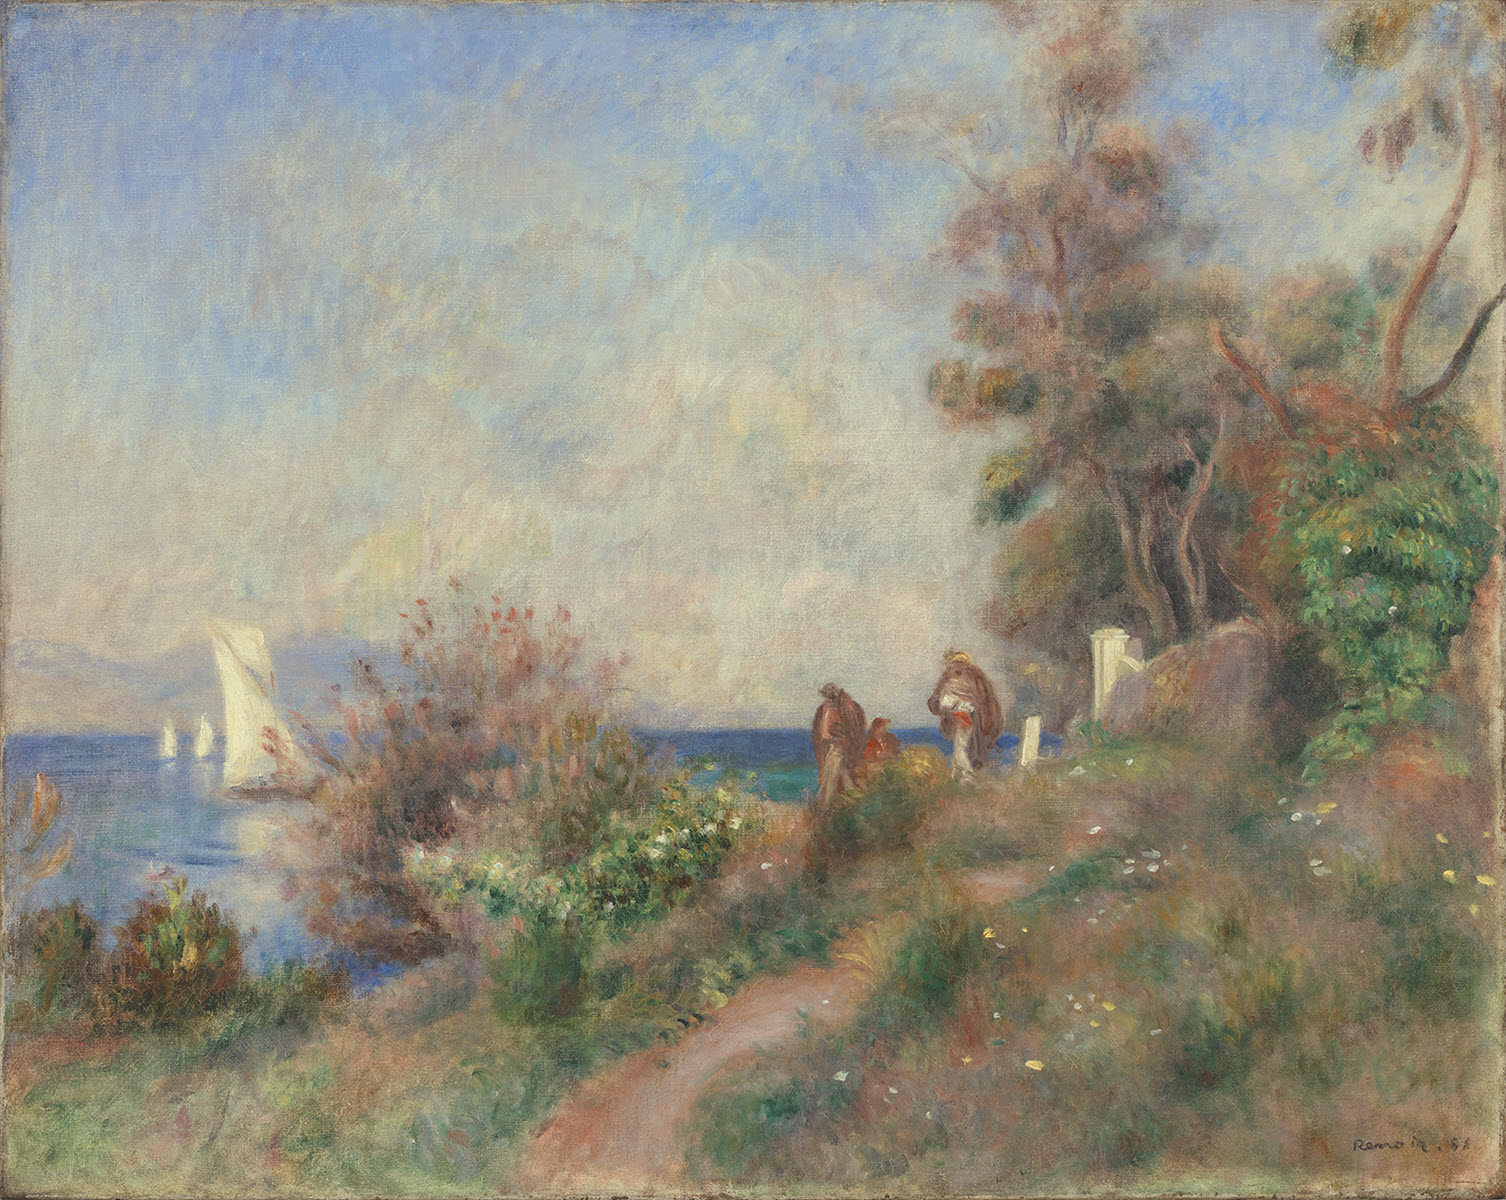 PIERRE-AUGUSTE RENOIR - Coastline at Antibes, 1888